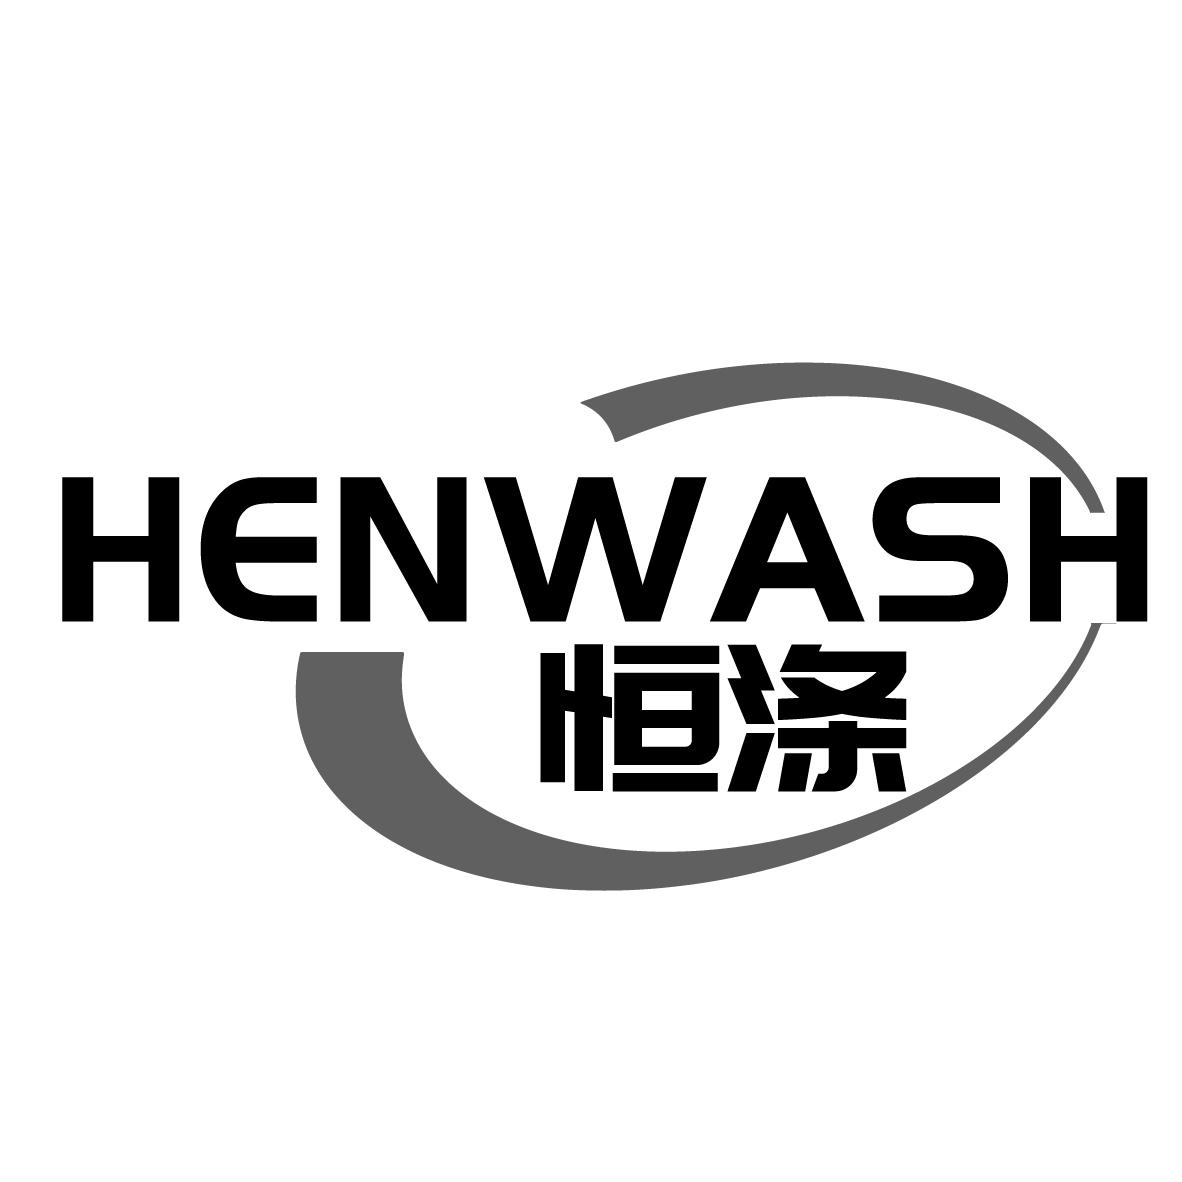  HENWASH